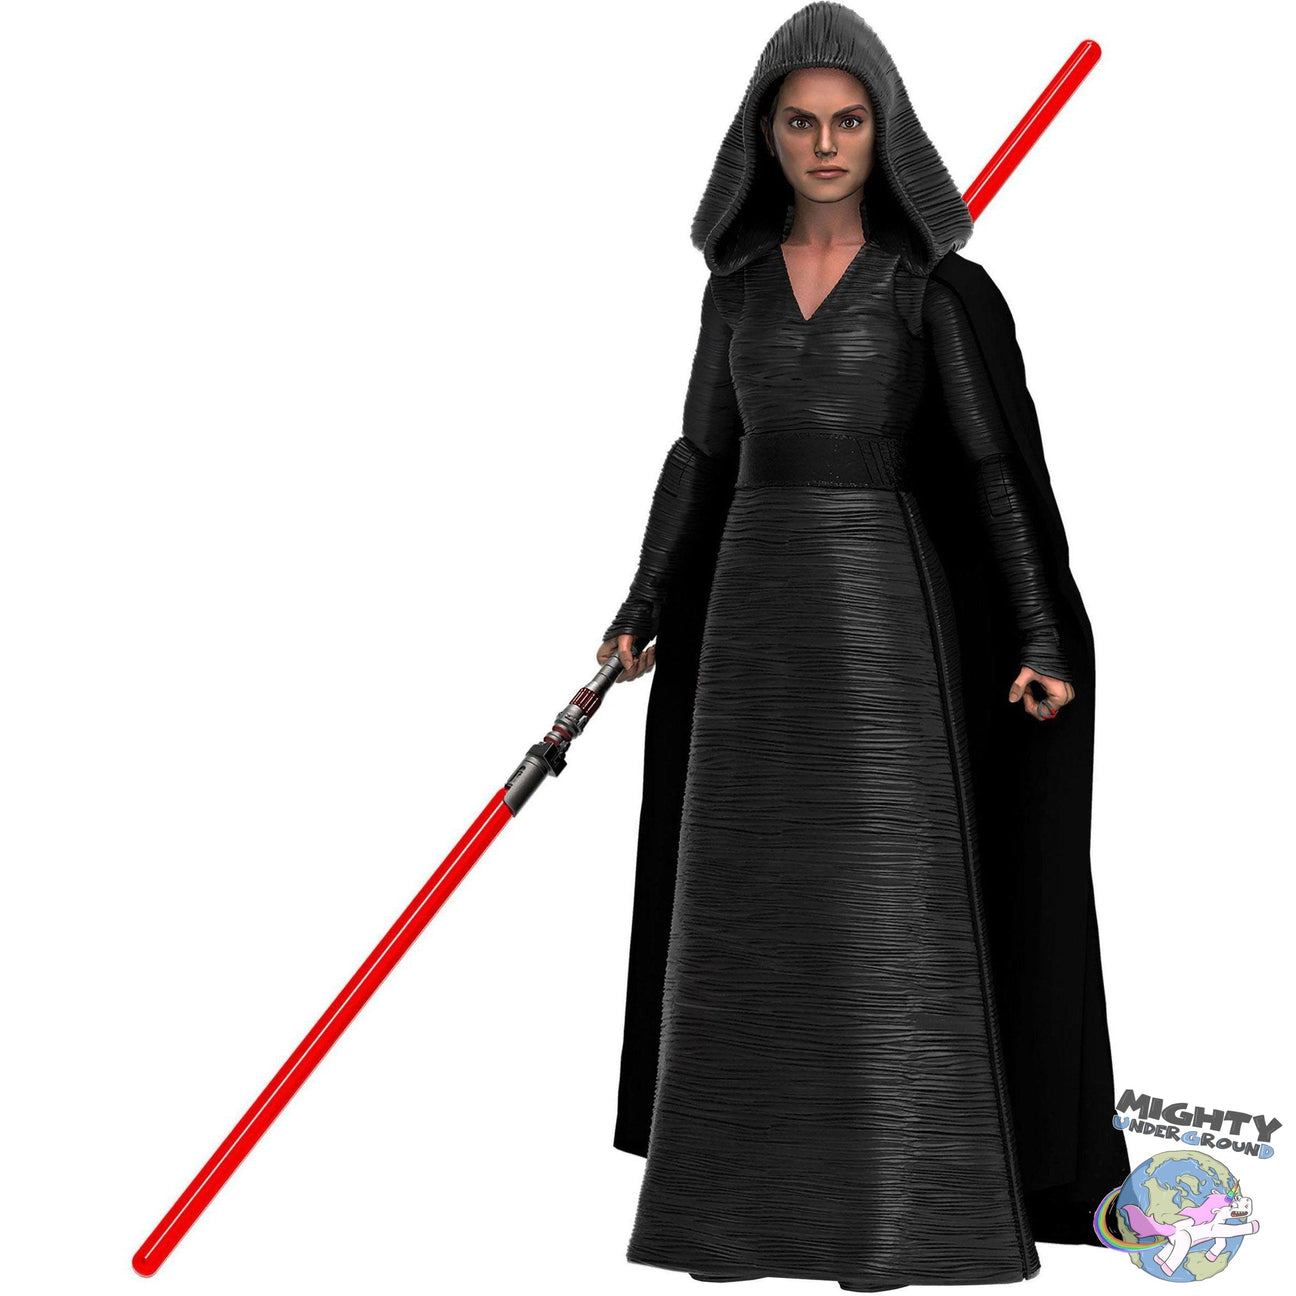 Star Wars Black Series: Rey (Dark Side Vision, Episode IX)-Actionfiguren-Hasbro-mighty-underground